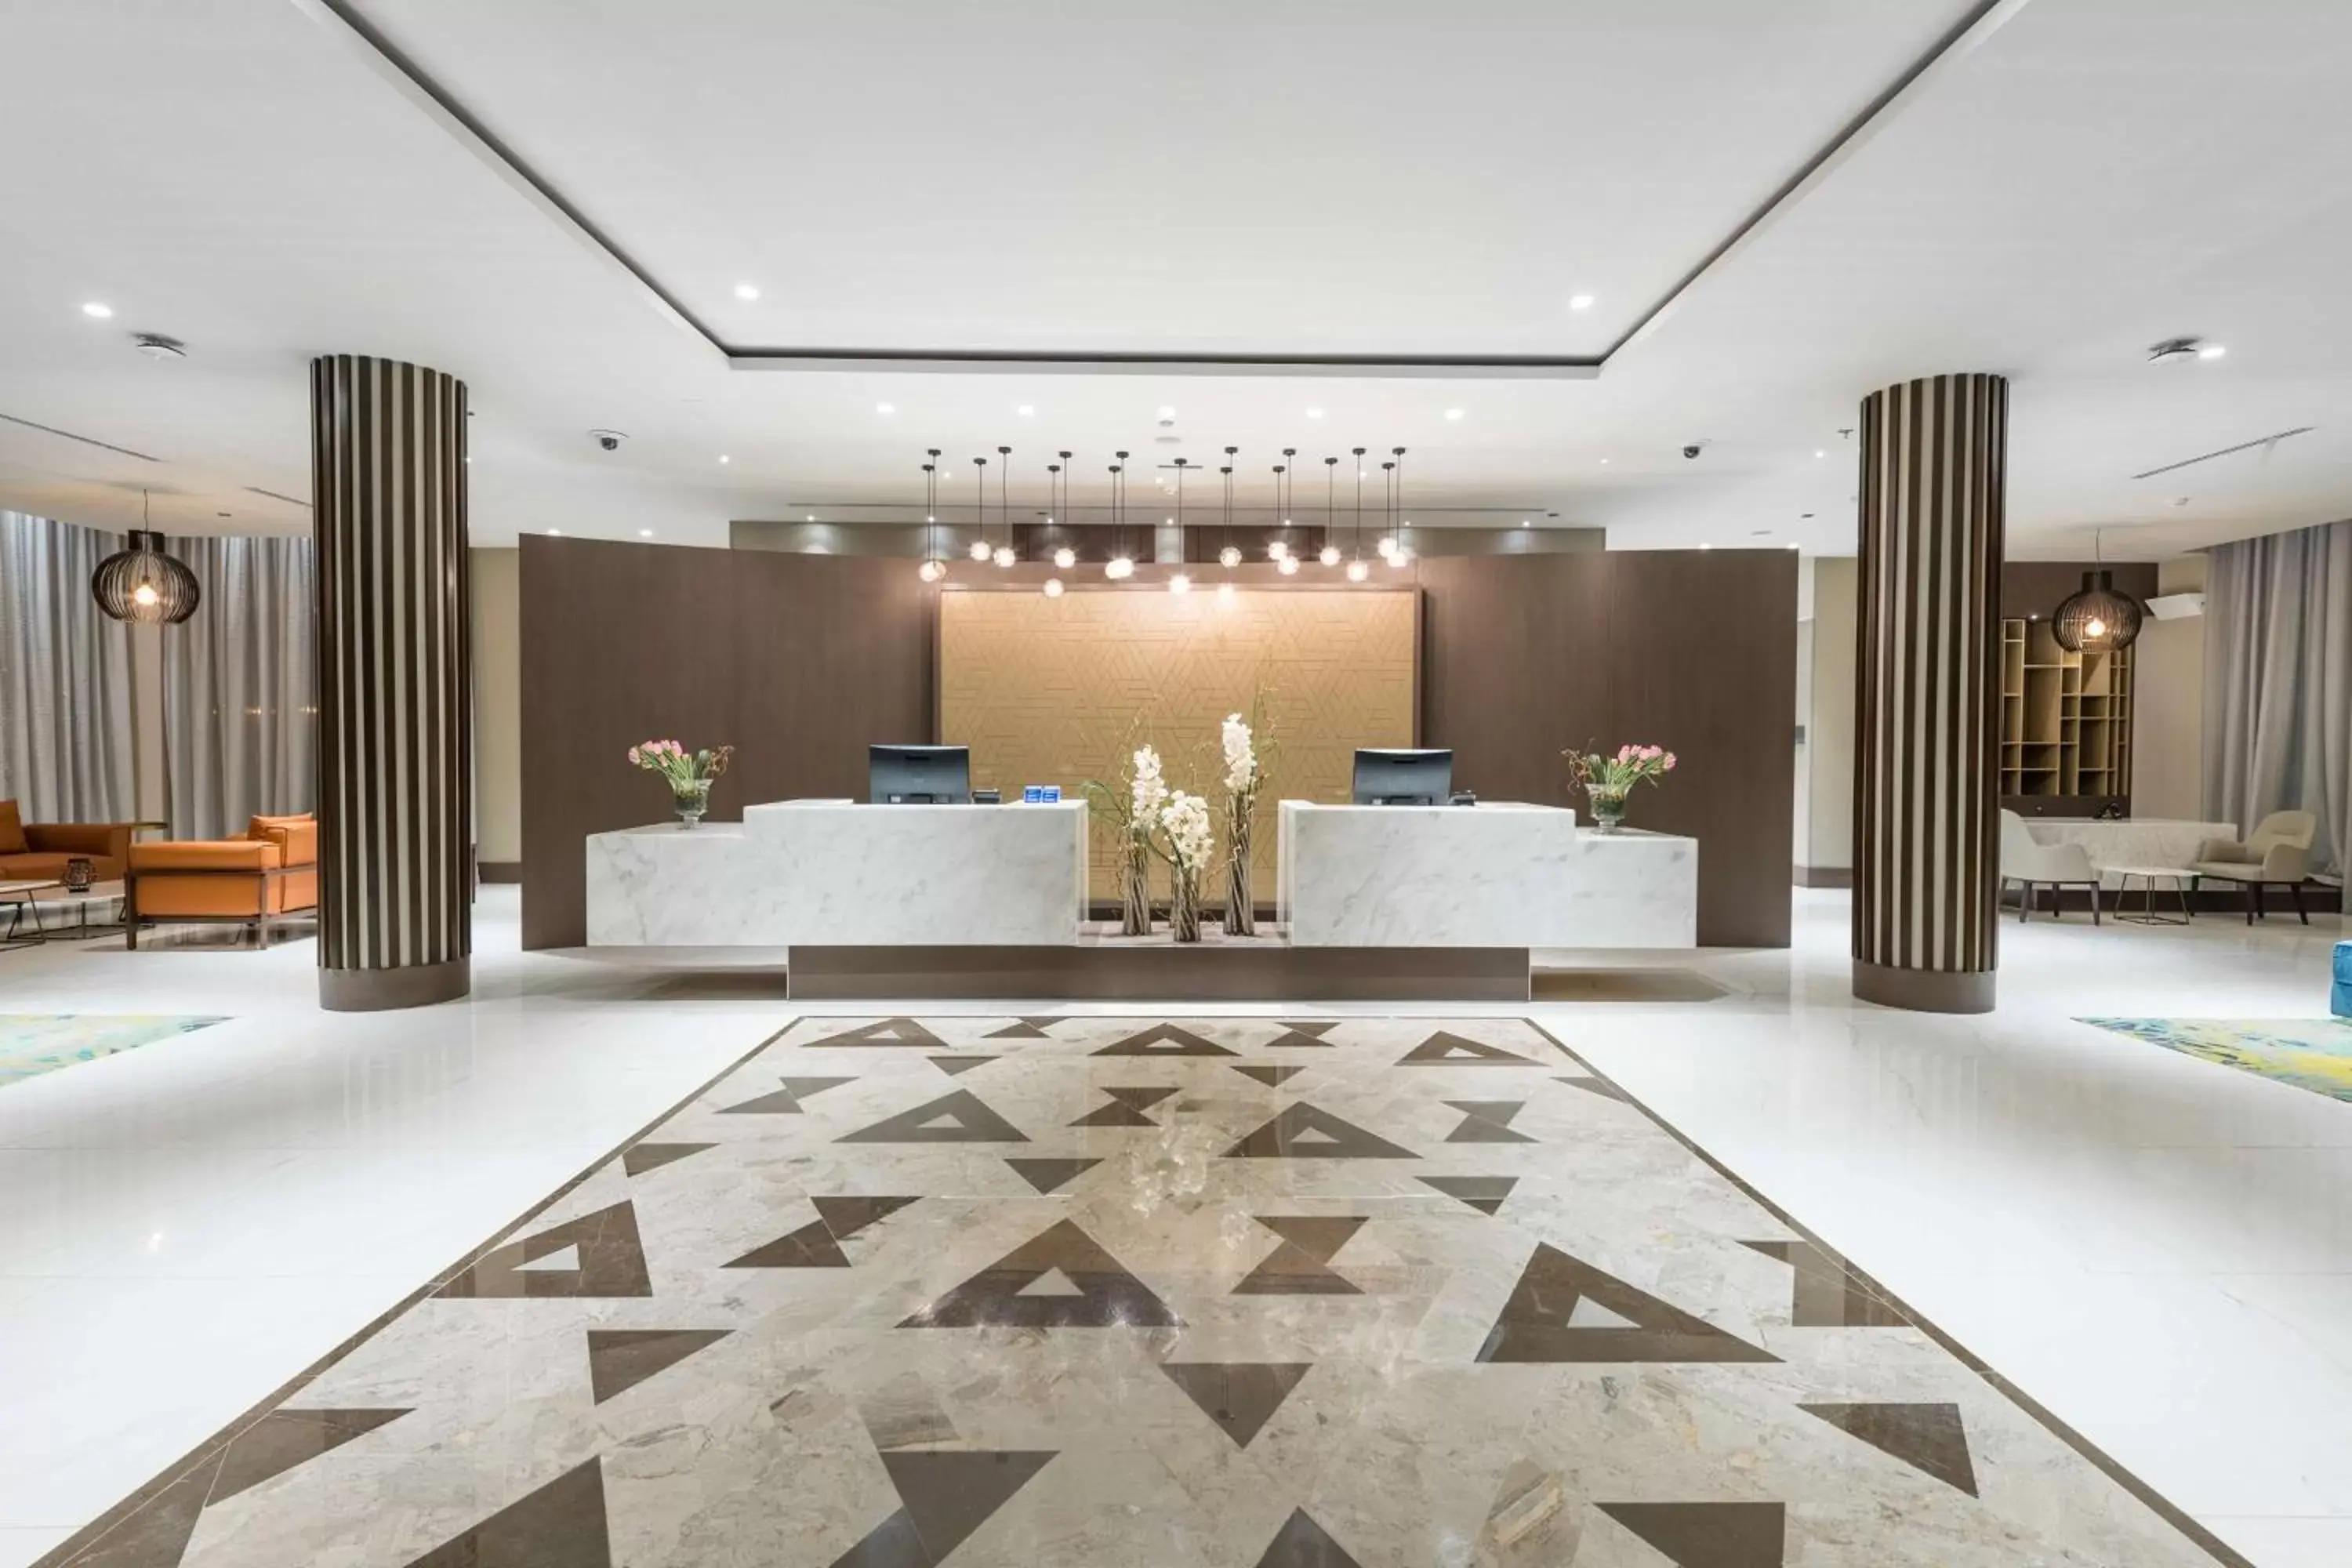 Lobby or reception, Lobby/Reception in Radisson Blu Hotel, Jeddah Corniche